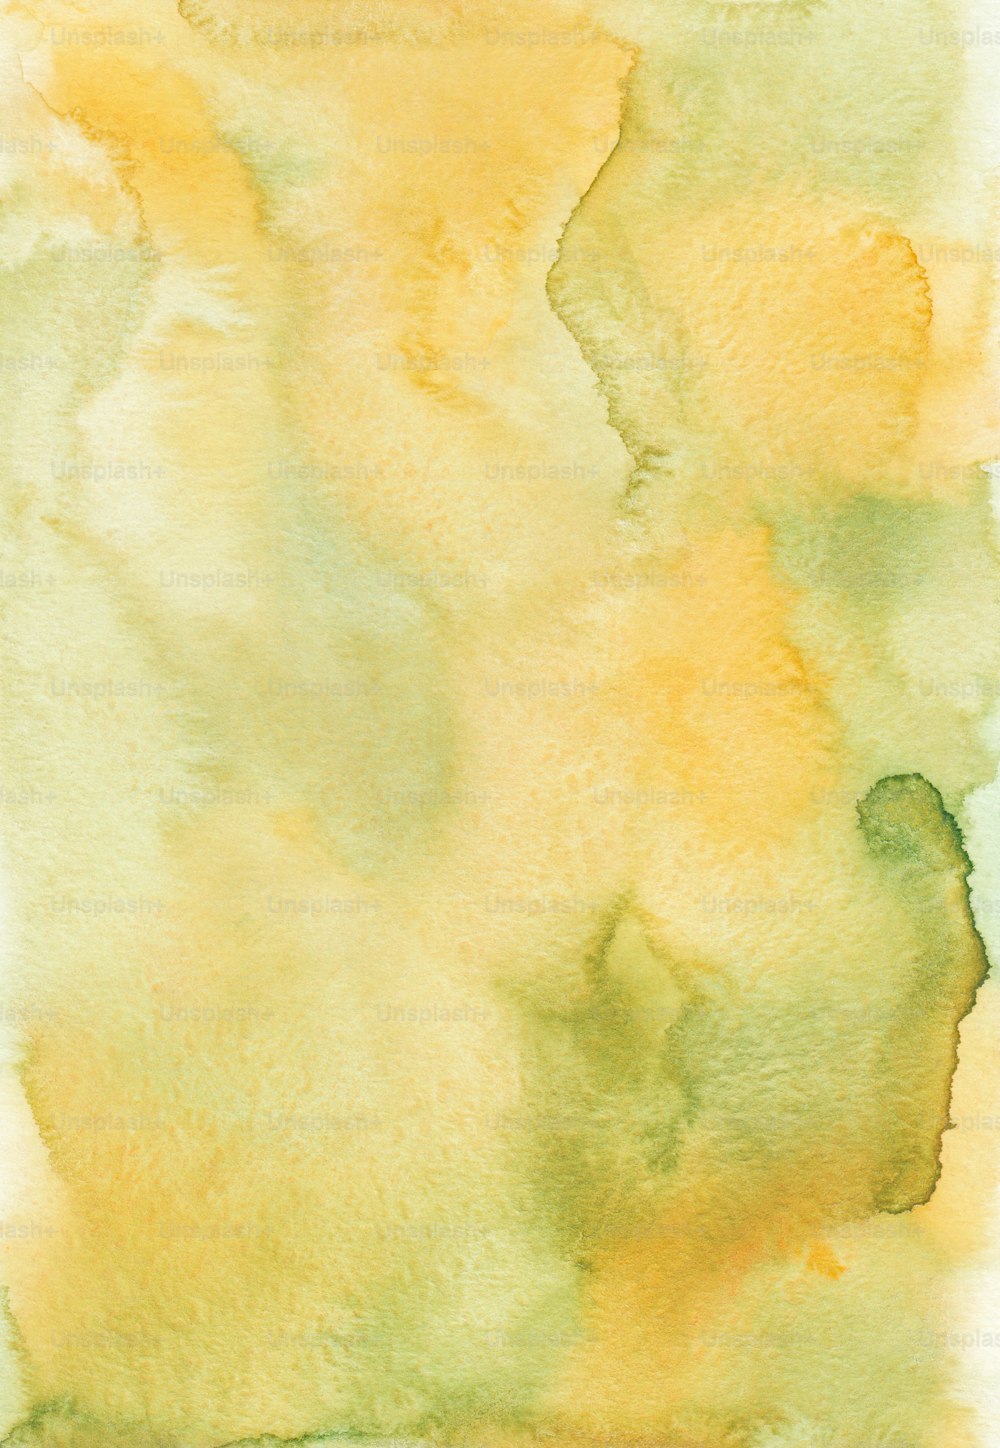 黄色と緑の水彩画